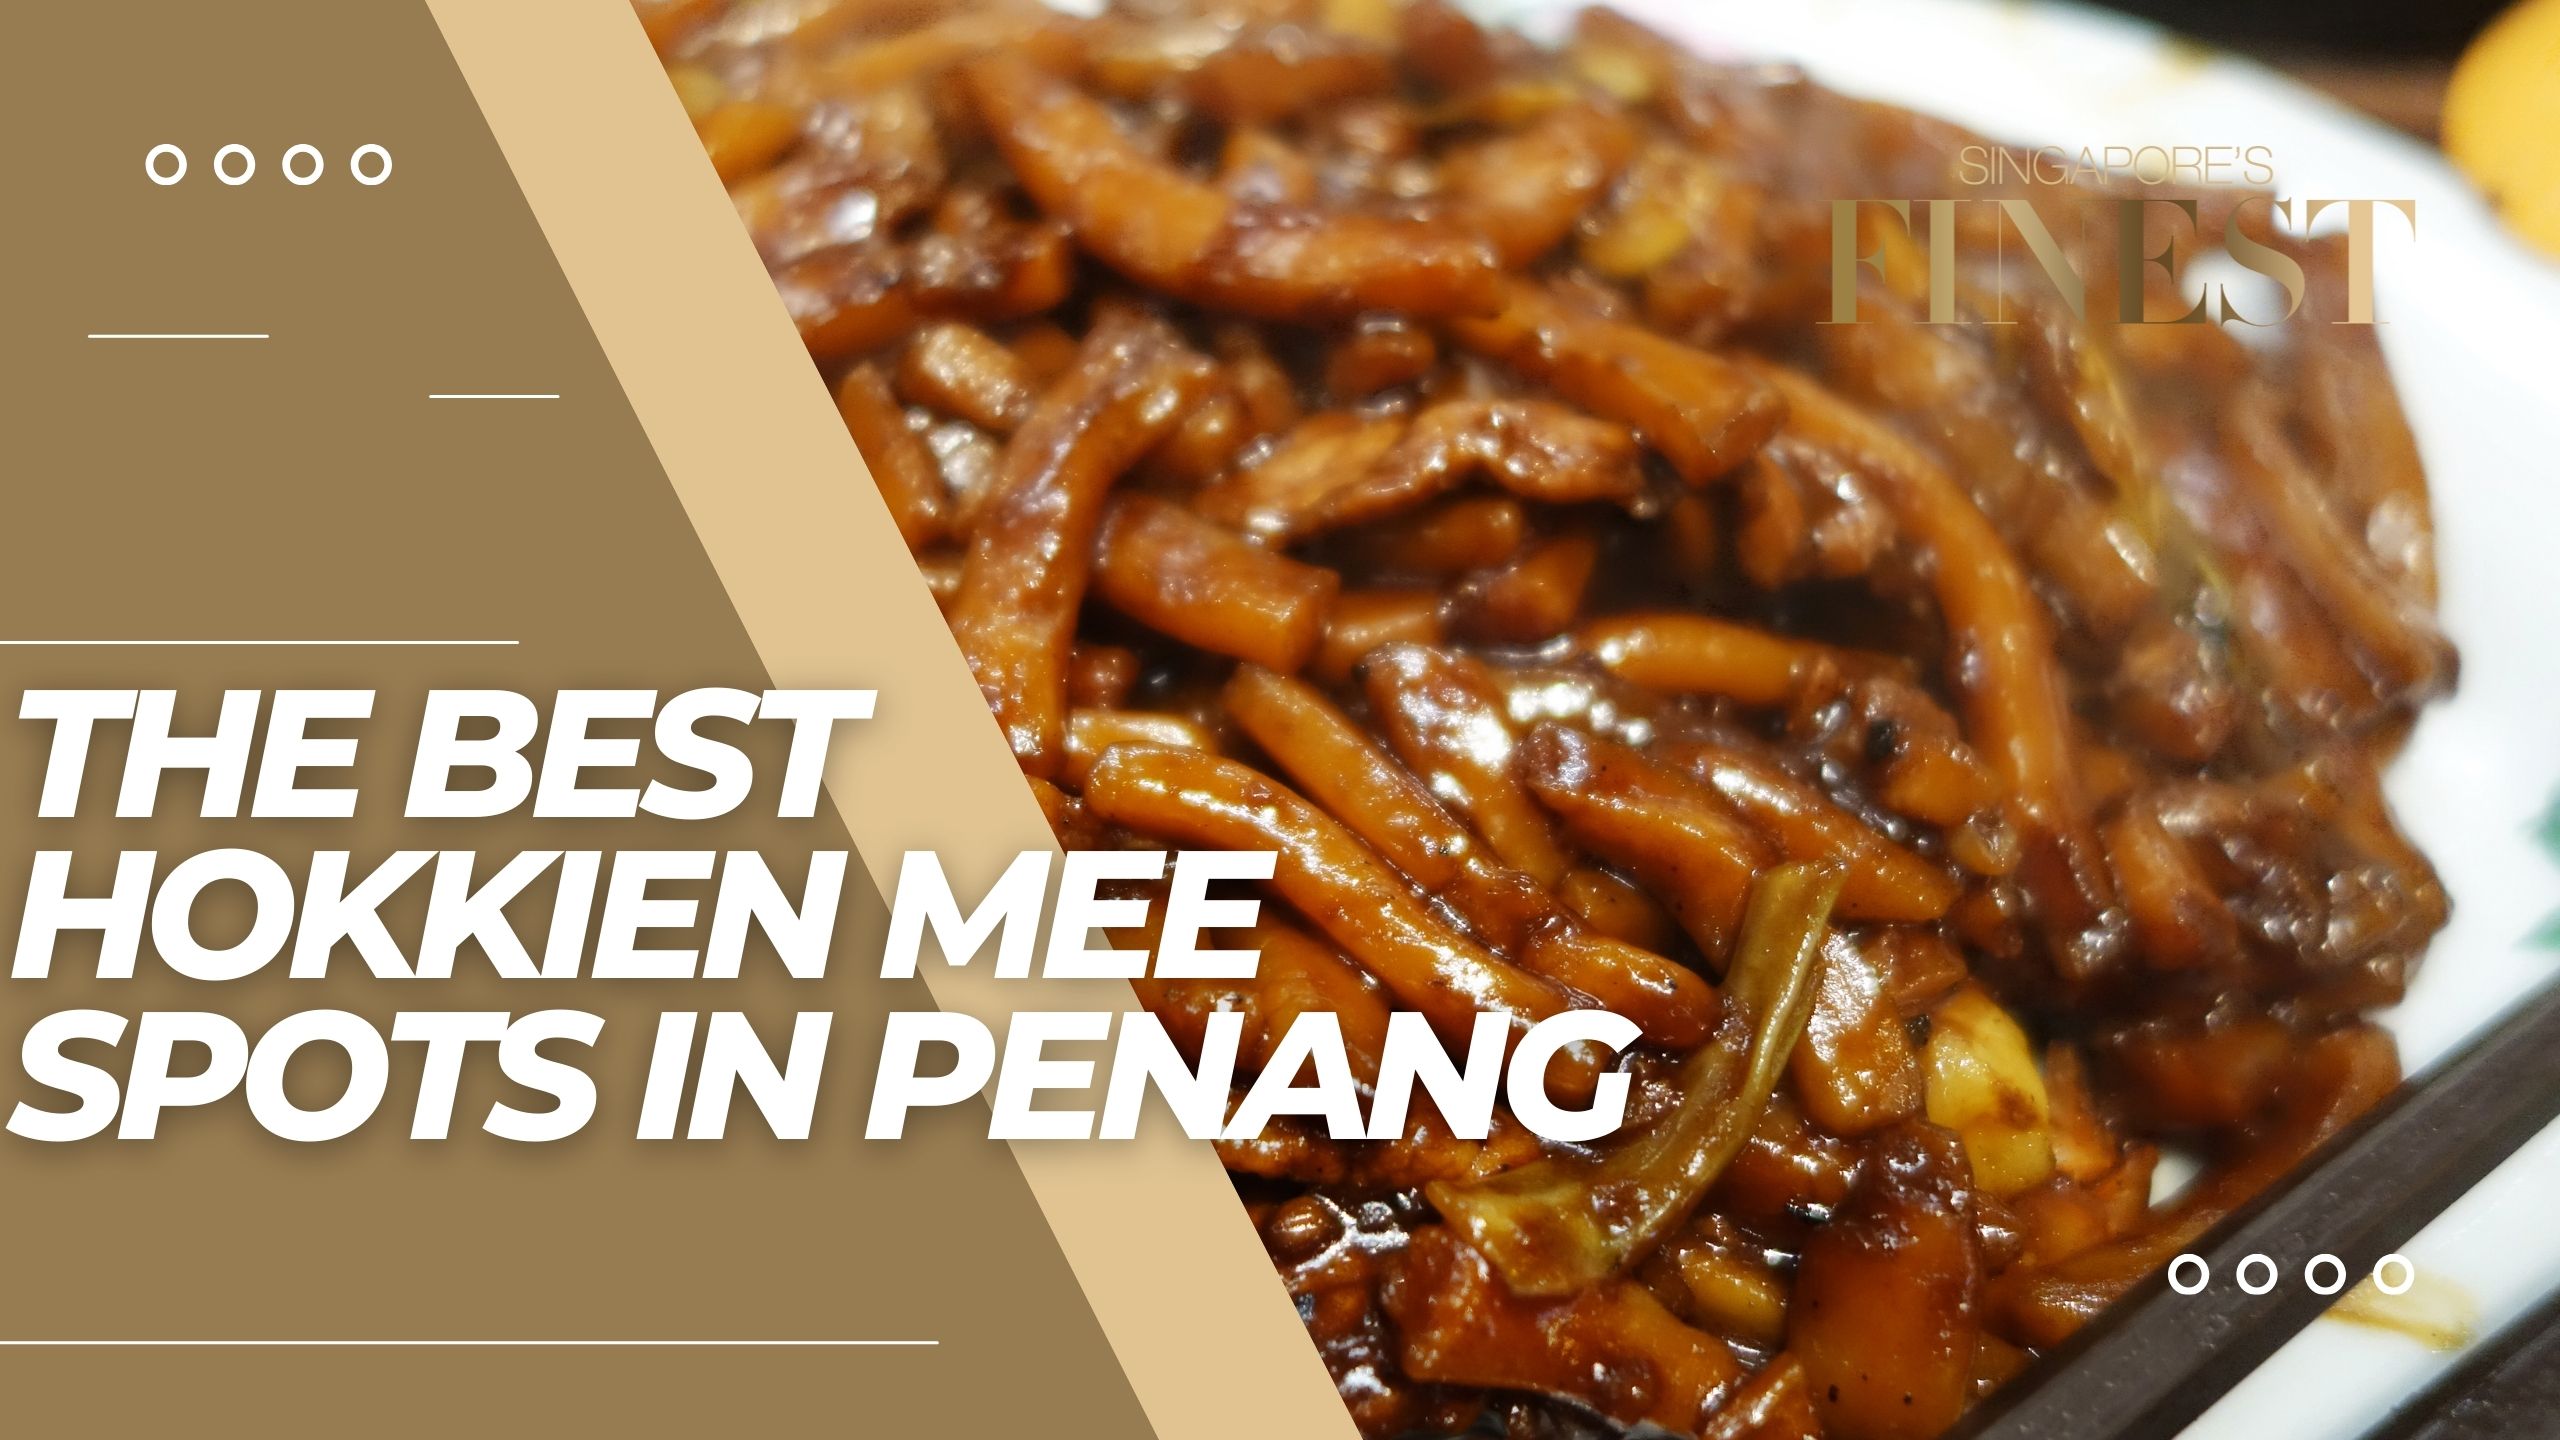 The Finest Hokkien Mee Spots in Penang